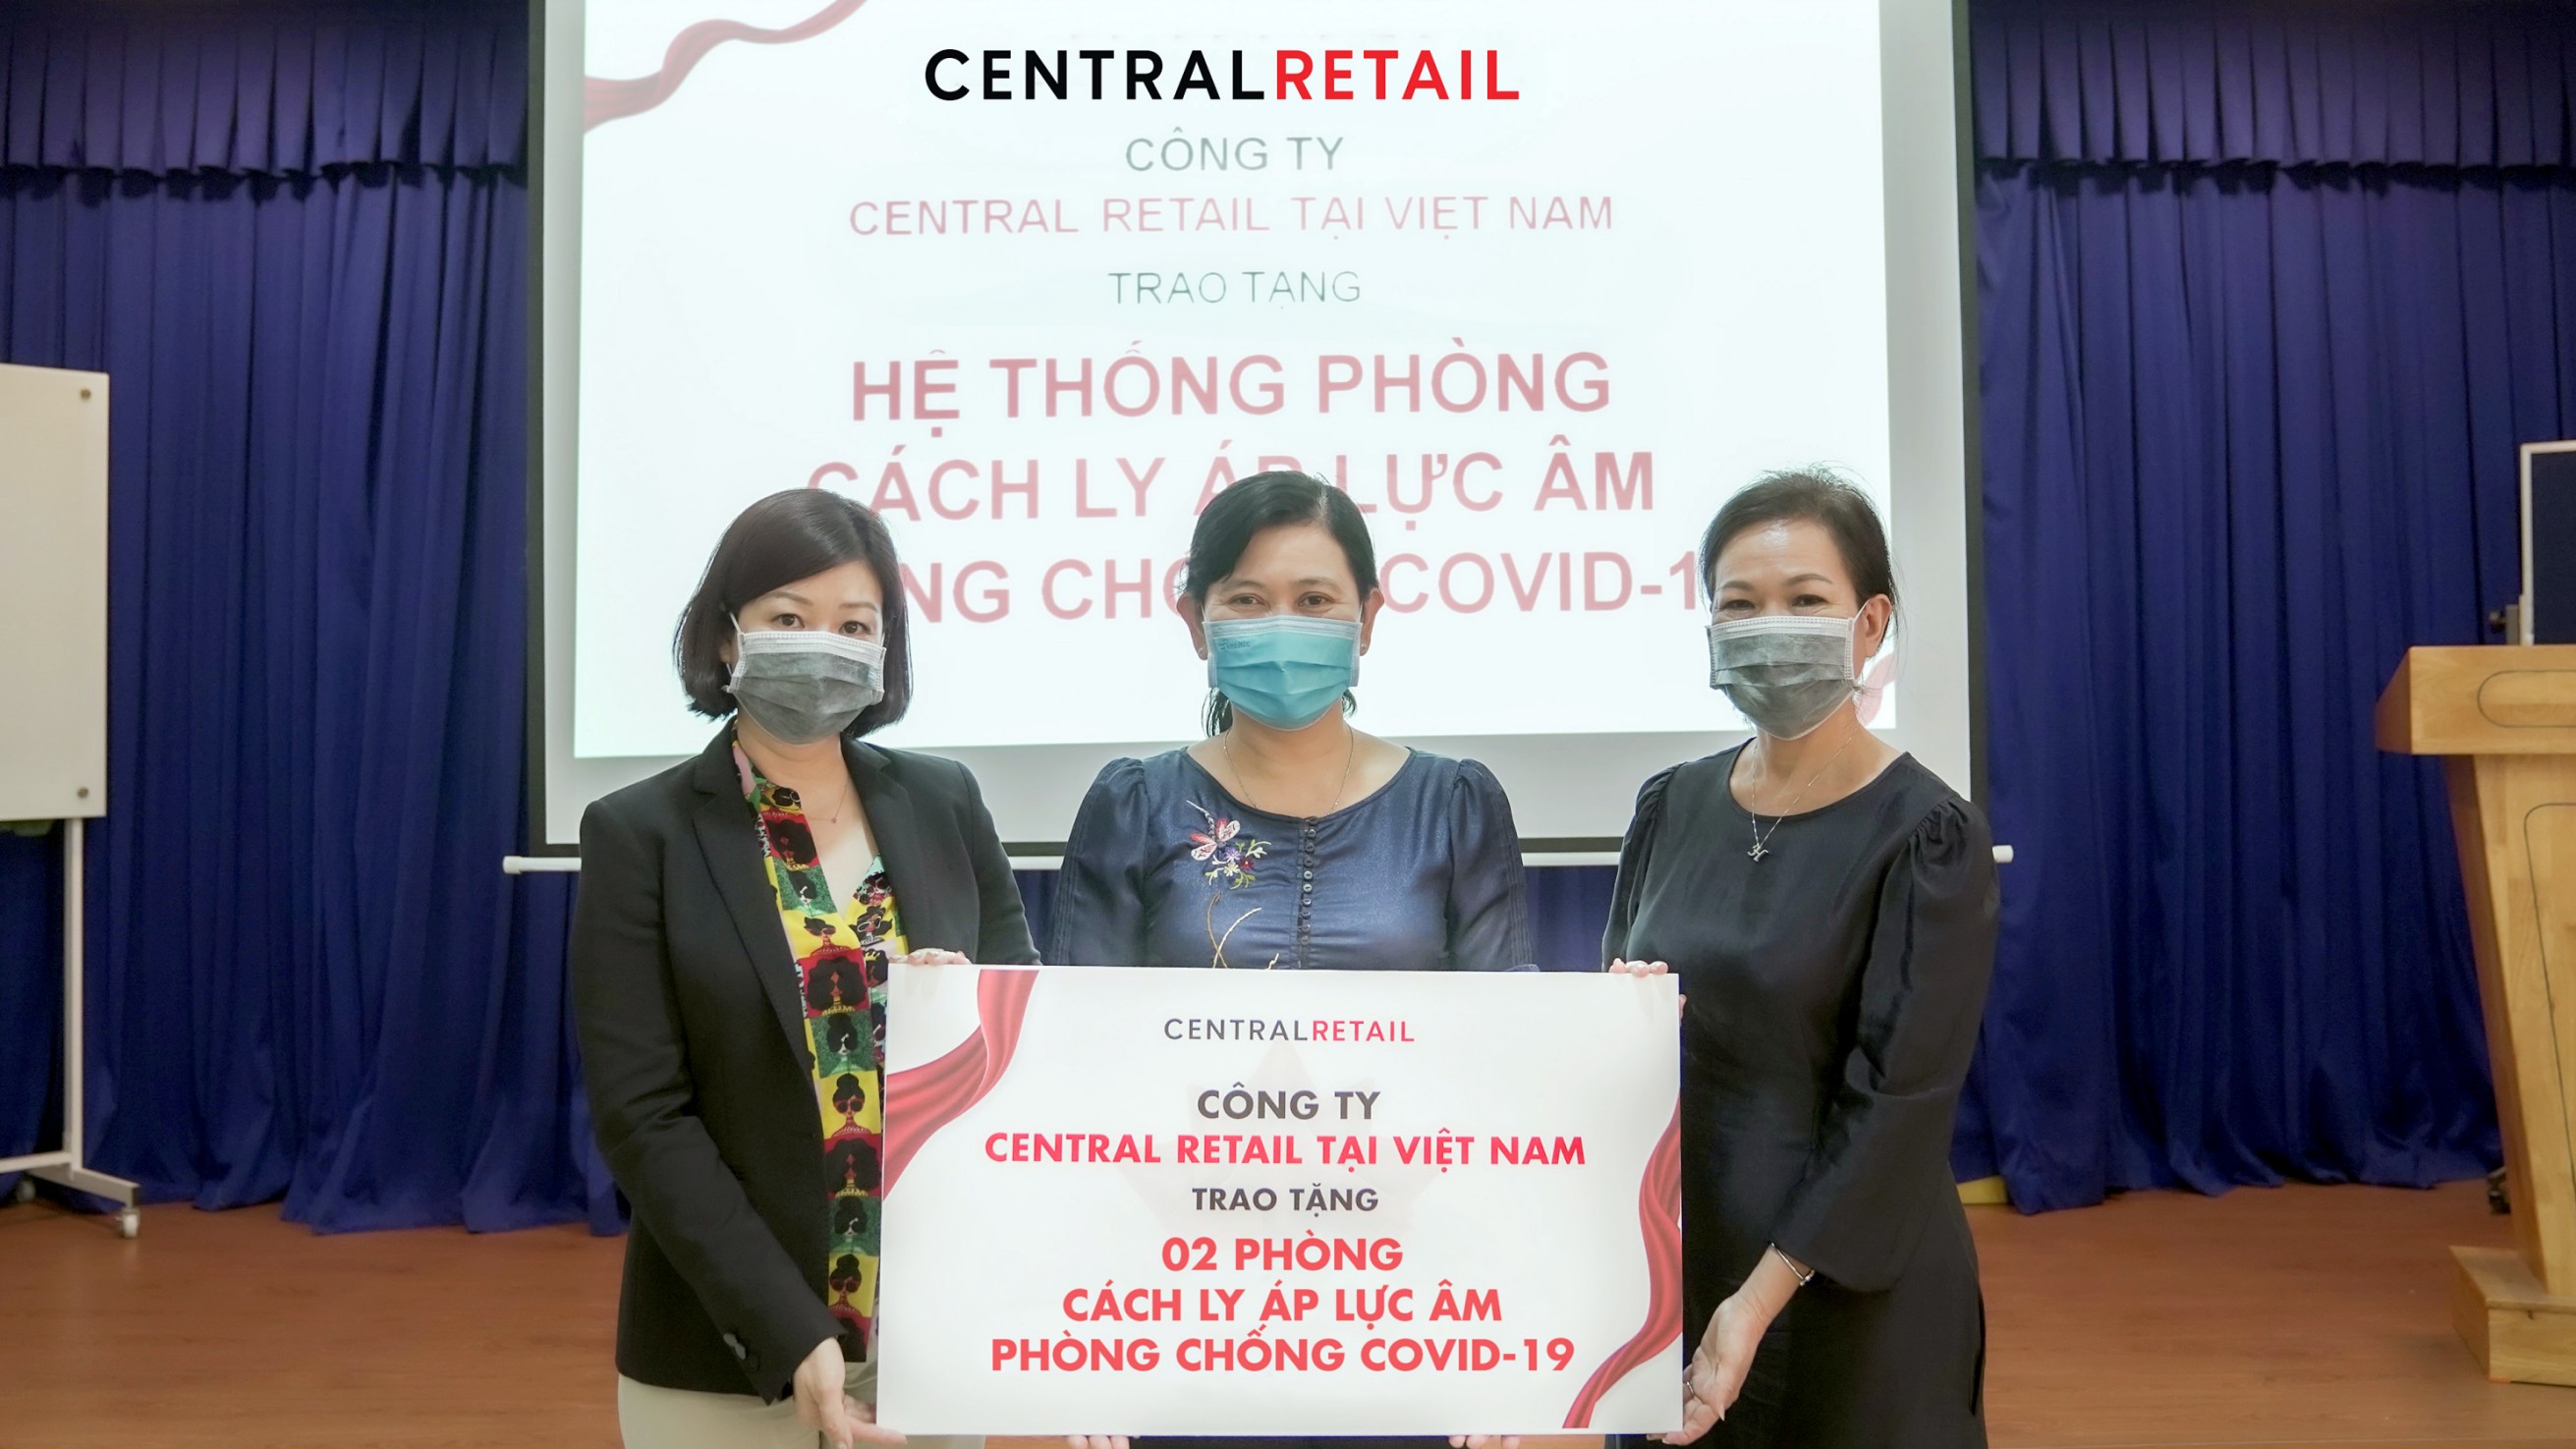 Đại diện Sở Y Tế Tp. Hồ Chí Minh (giữa) nhận trao tặng 02 phòng cách ly áp lực âm từ Central Retail, và sẽ được trao cho Bệnh viện Huyện Cần Giờ, chuyên điều trị cho bệnh nhân nhiễm Covid-19